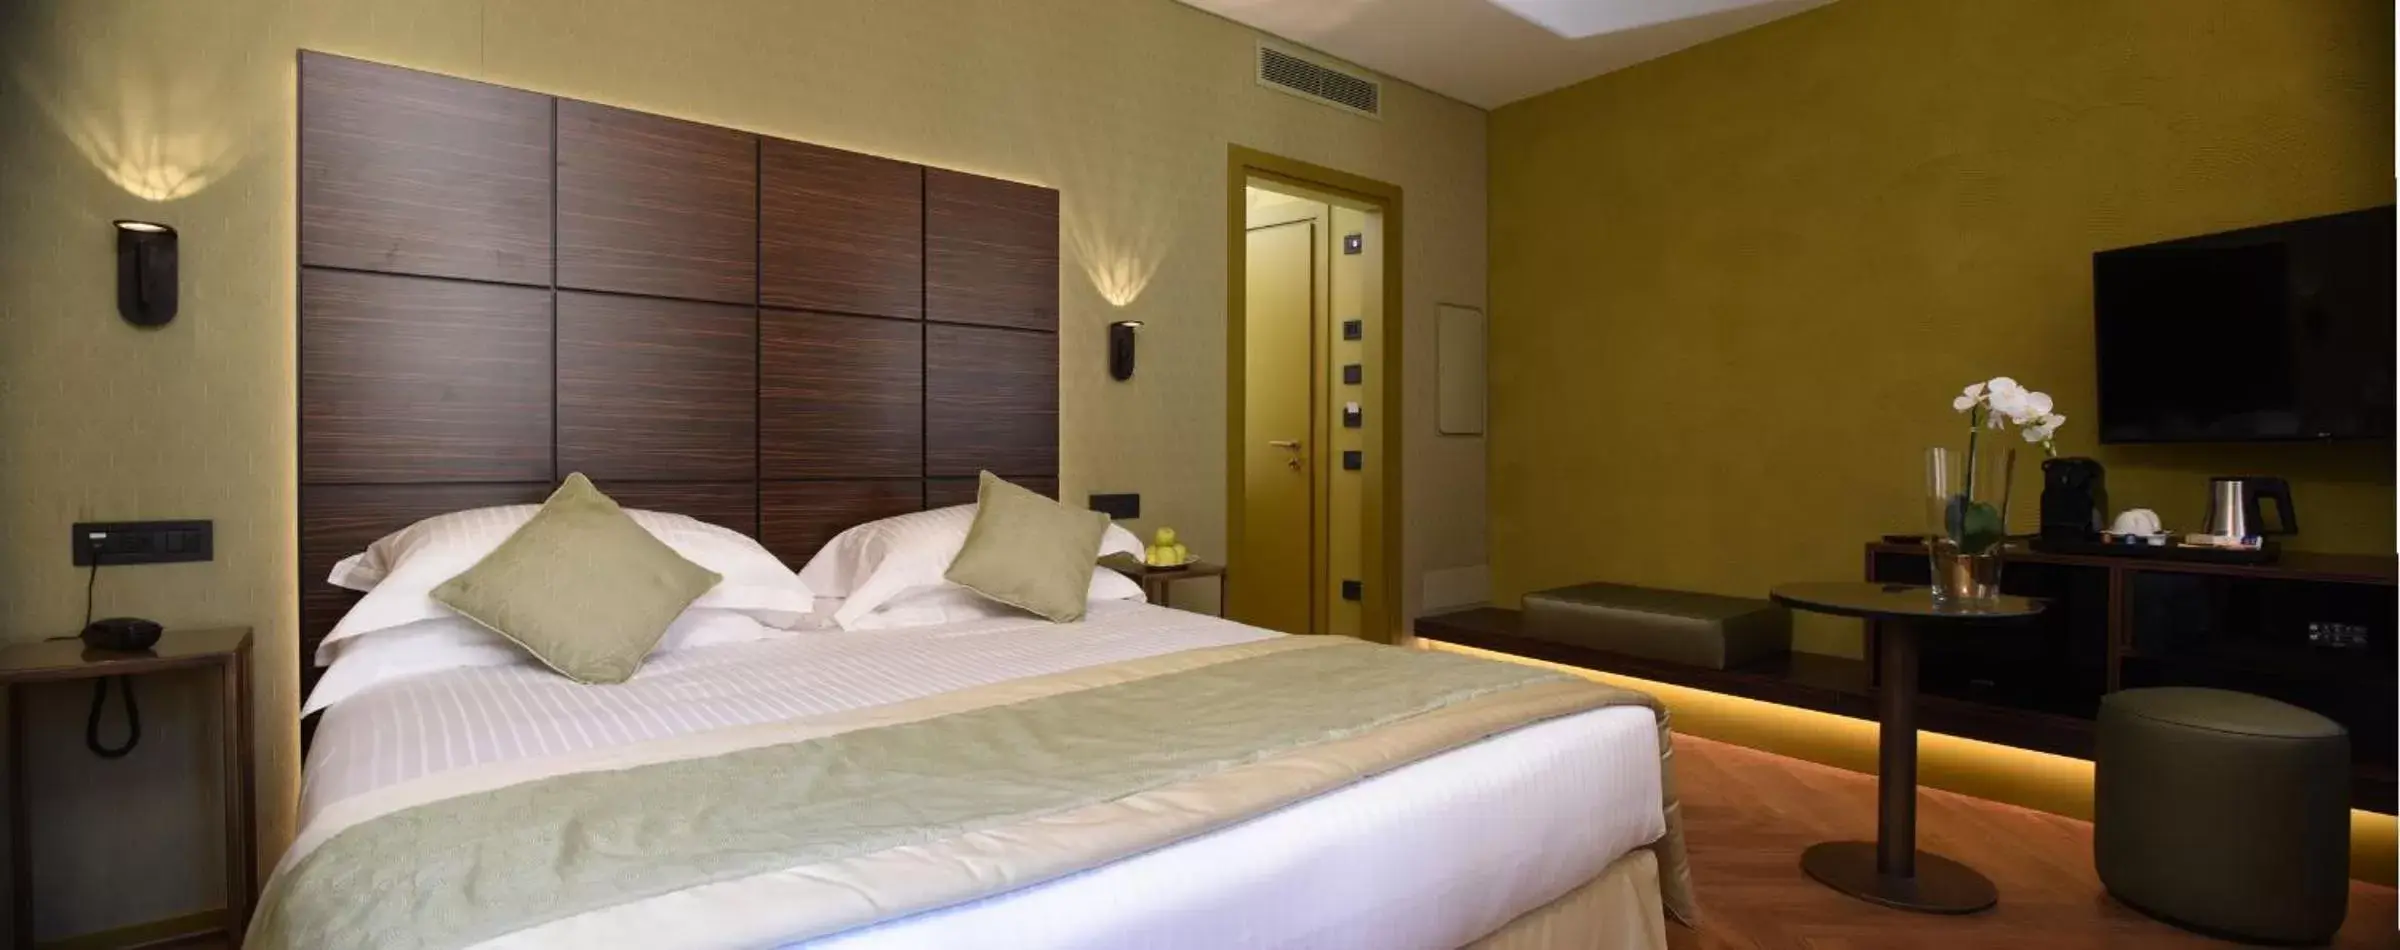 Bedroom, Bed in Rosa Salva Hotel